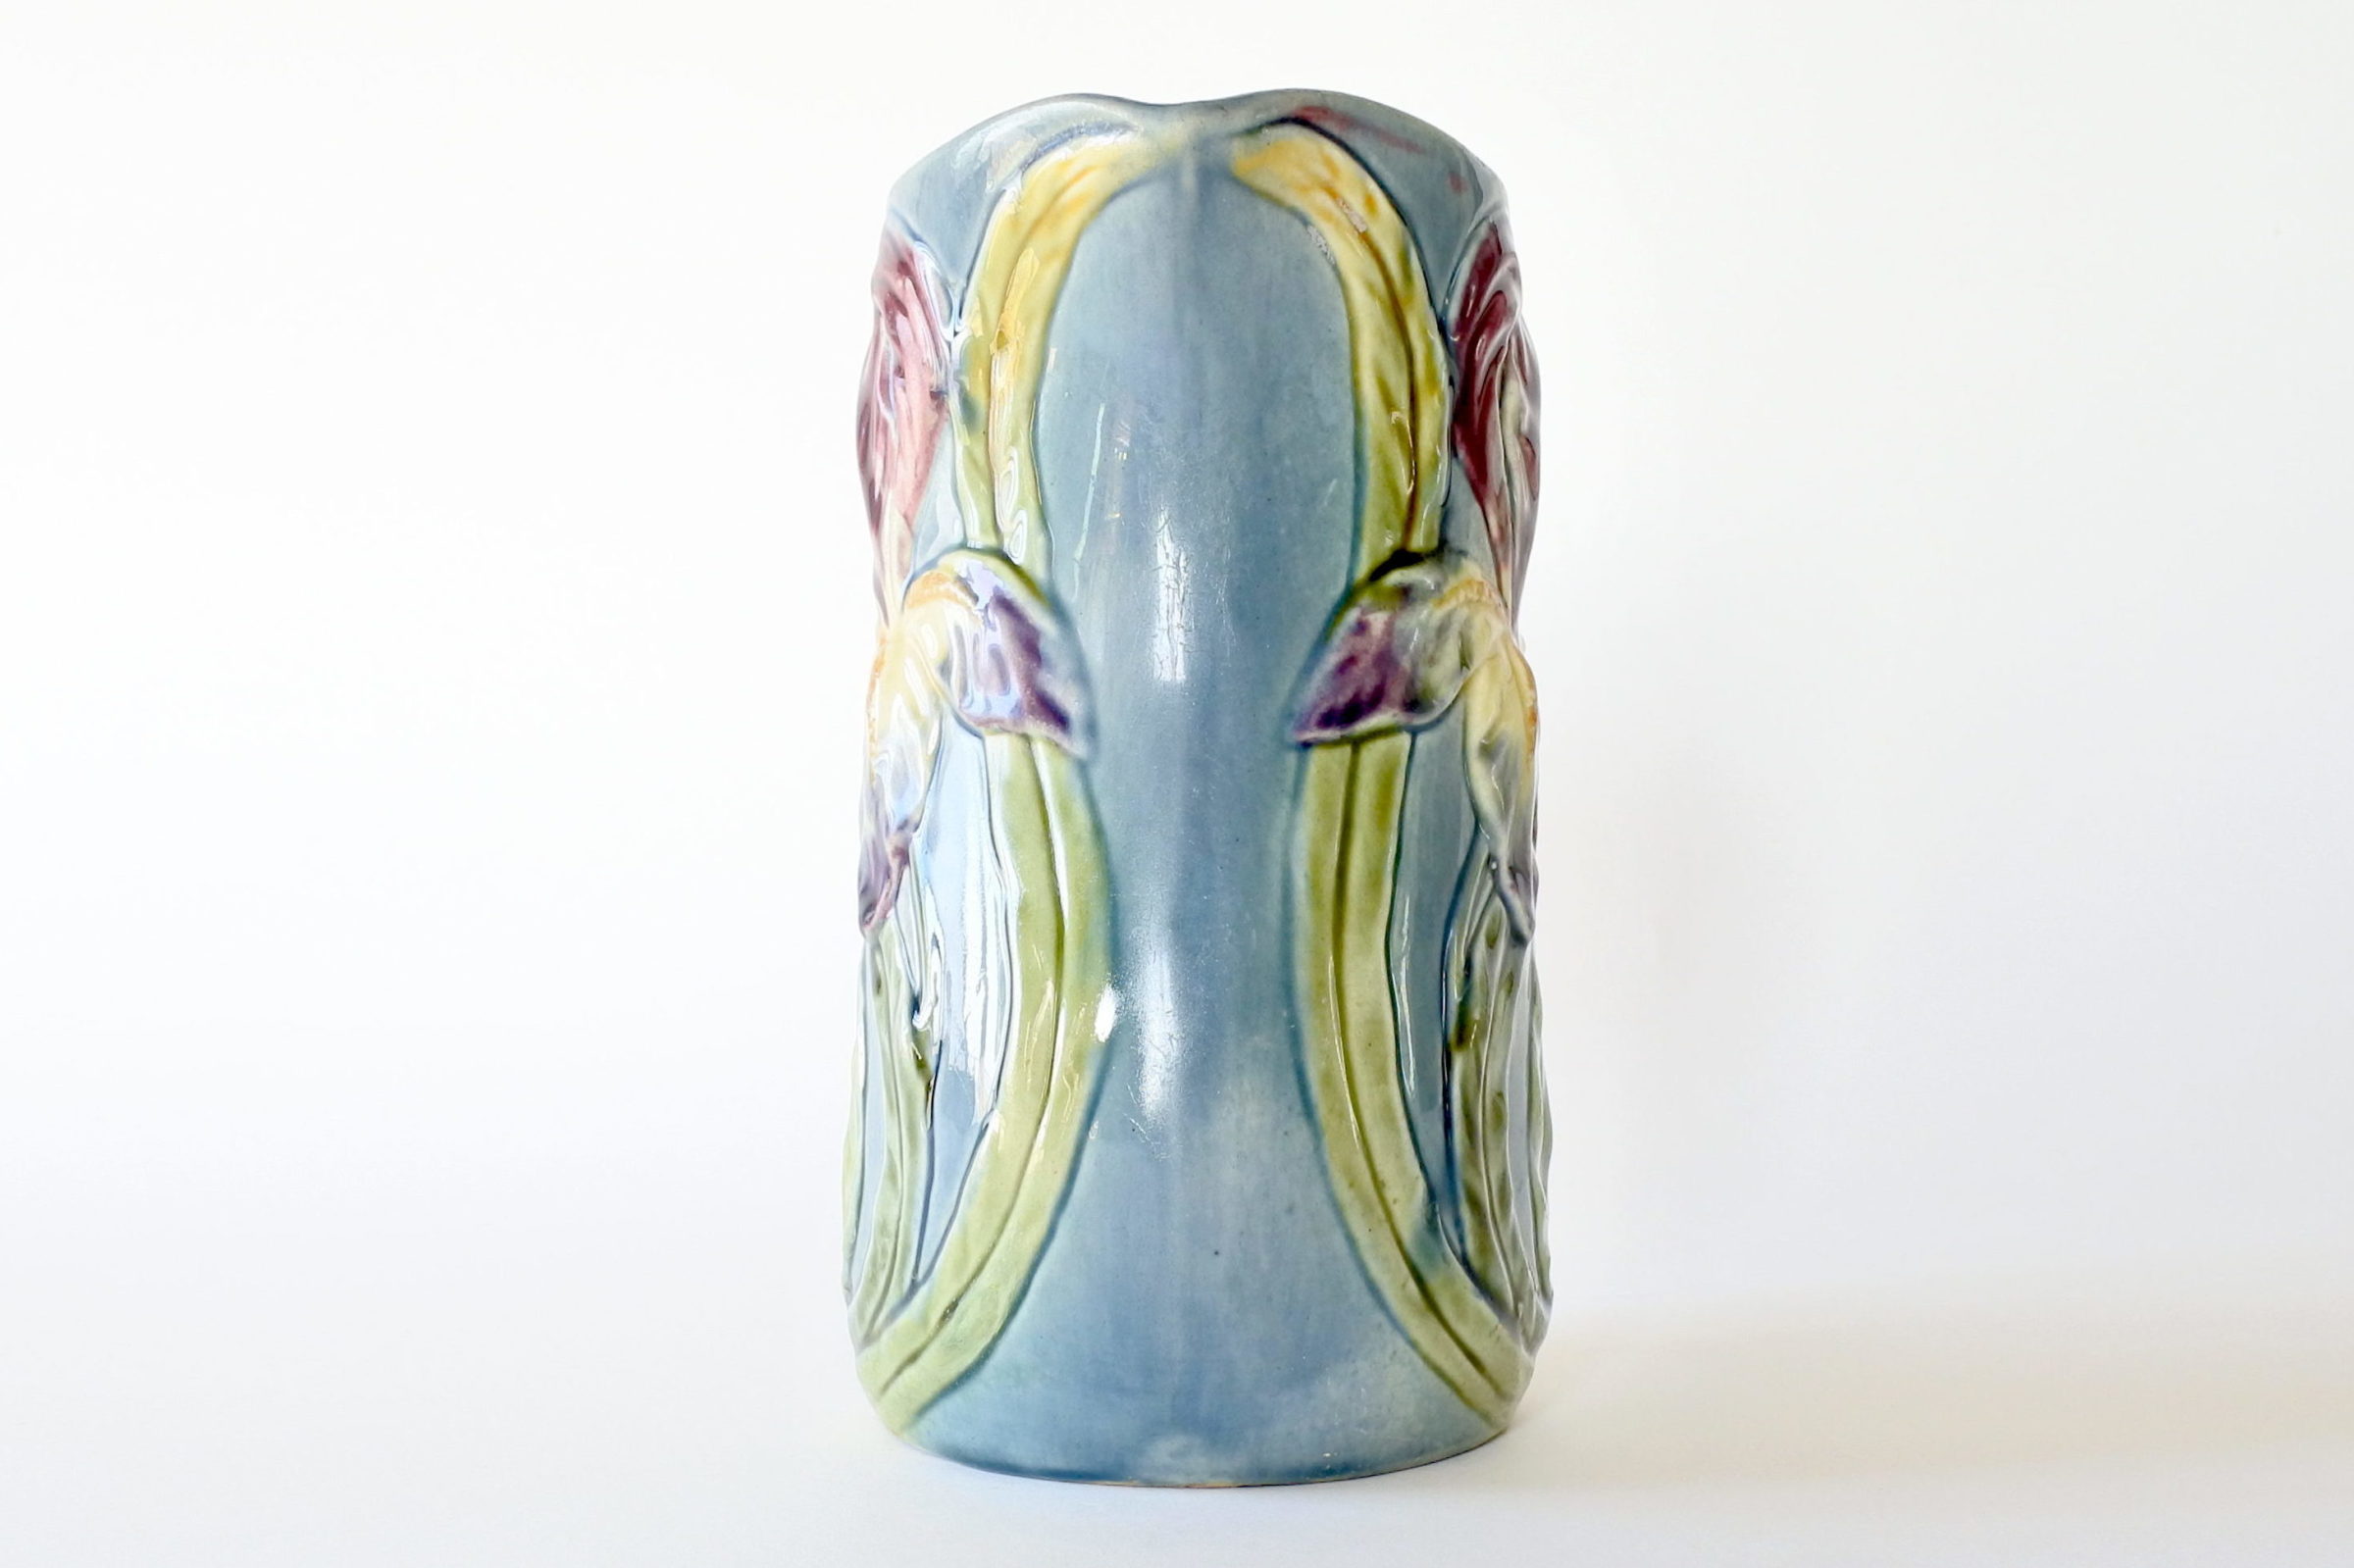 Brocca Orchies in ceramica barbotine con iris su fondo azzurro - 5